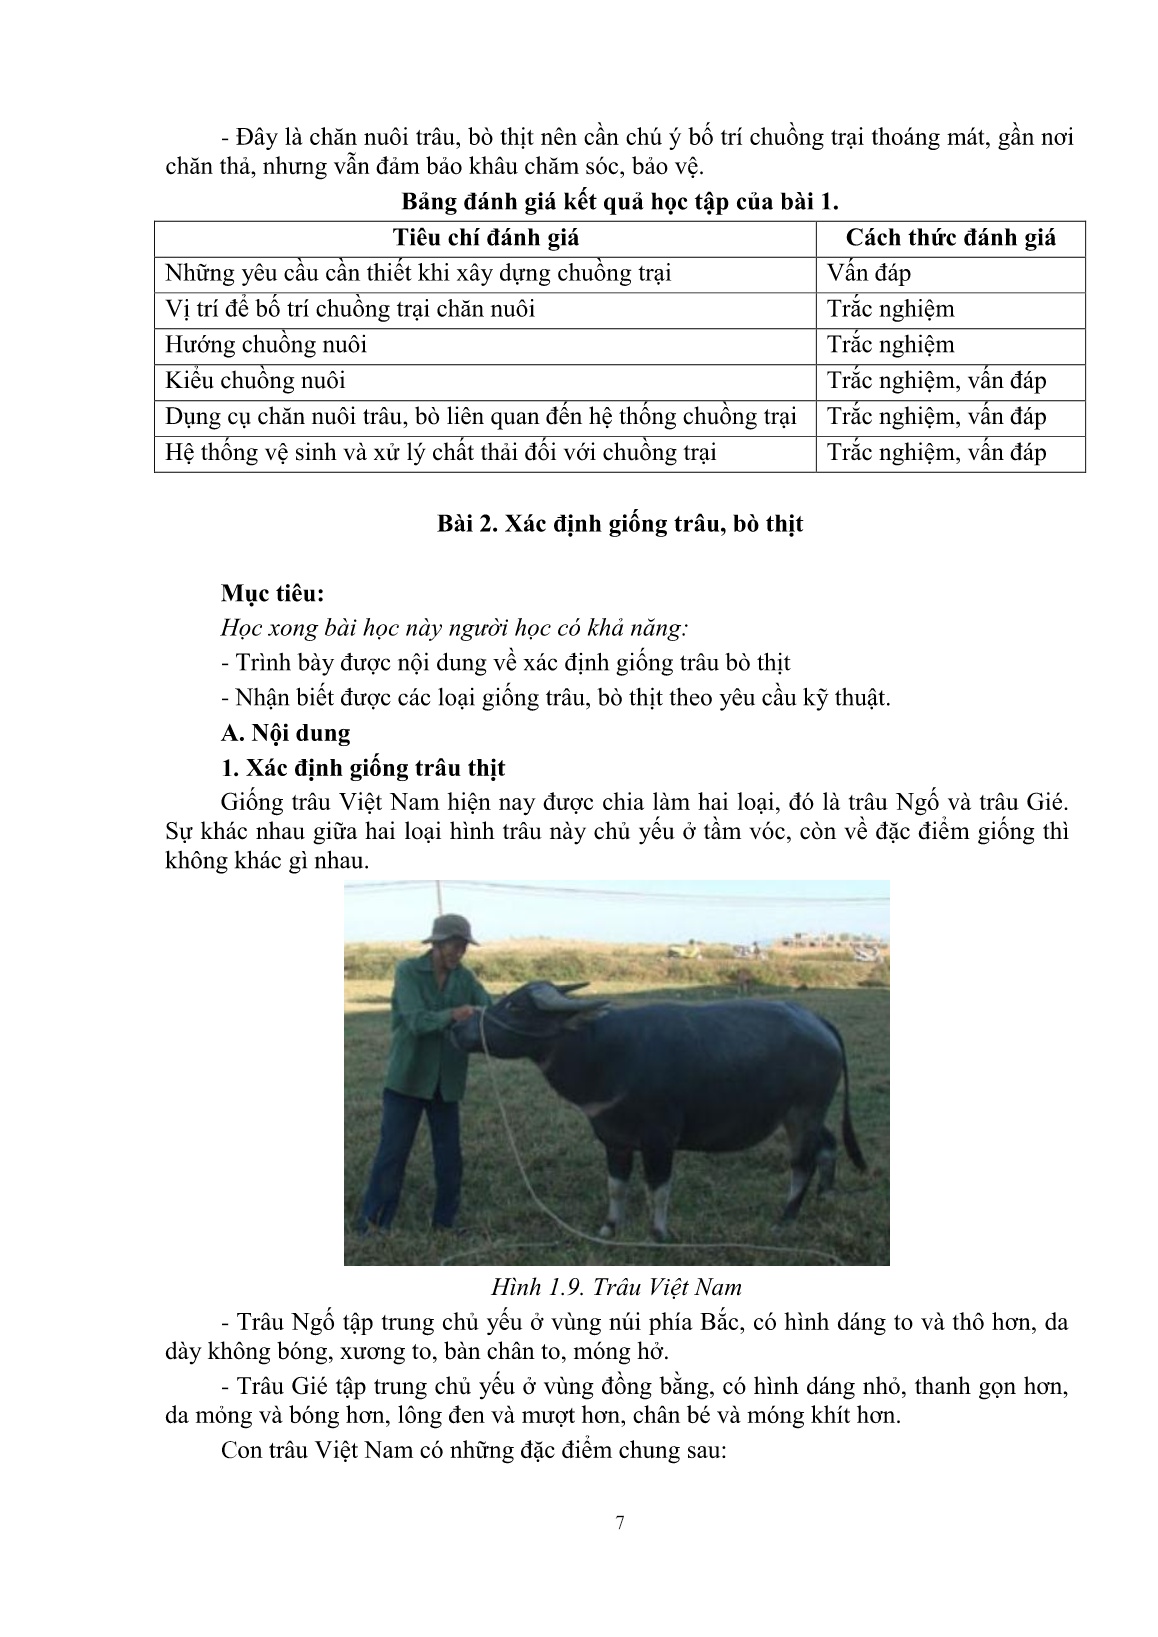 Giáo trình mô đun Nuôi trâu, bò thịt (Trình độ: Đào tạo dưới 3 tháng) trang 9